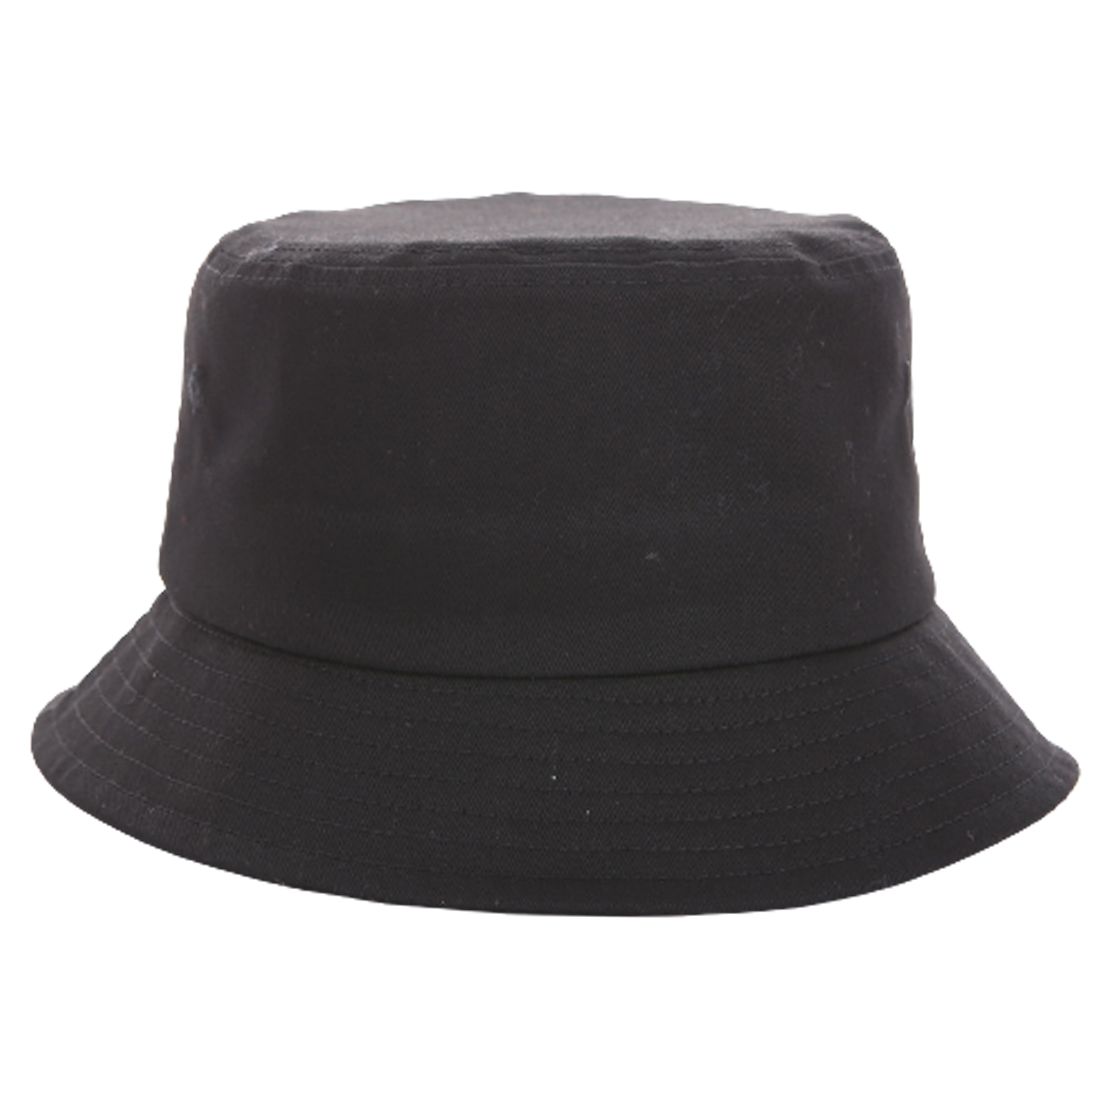 Sombrero de cubo sin estructura de sarga de algodón promocional